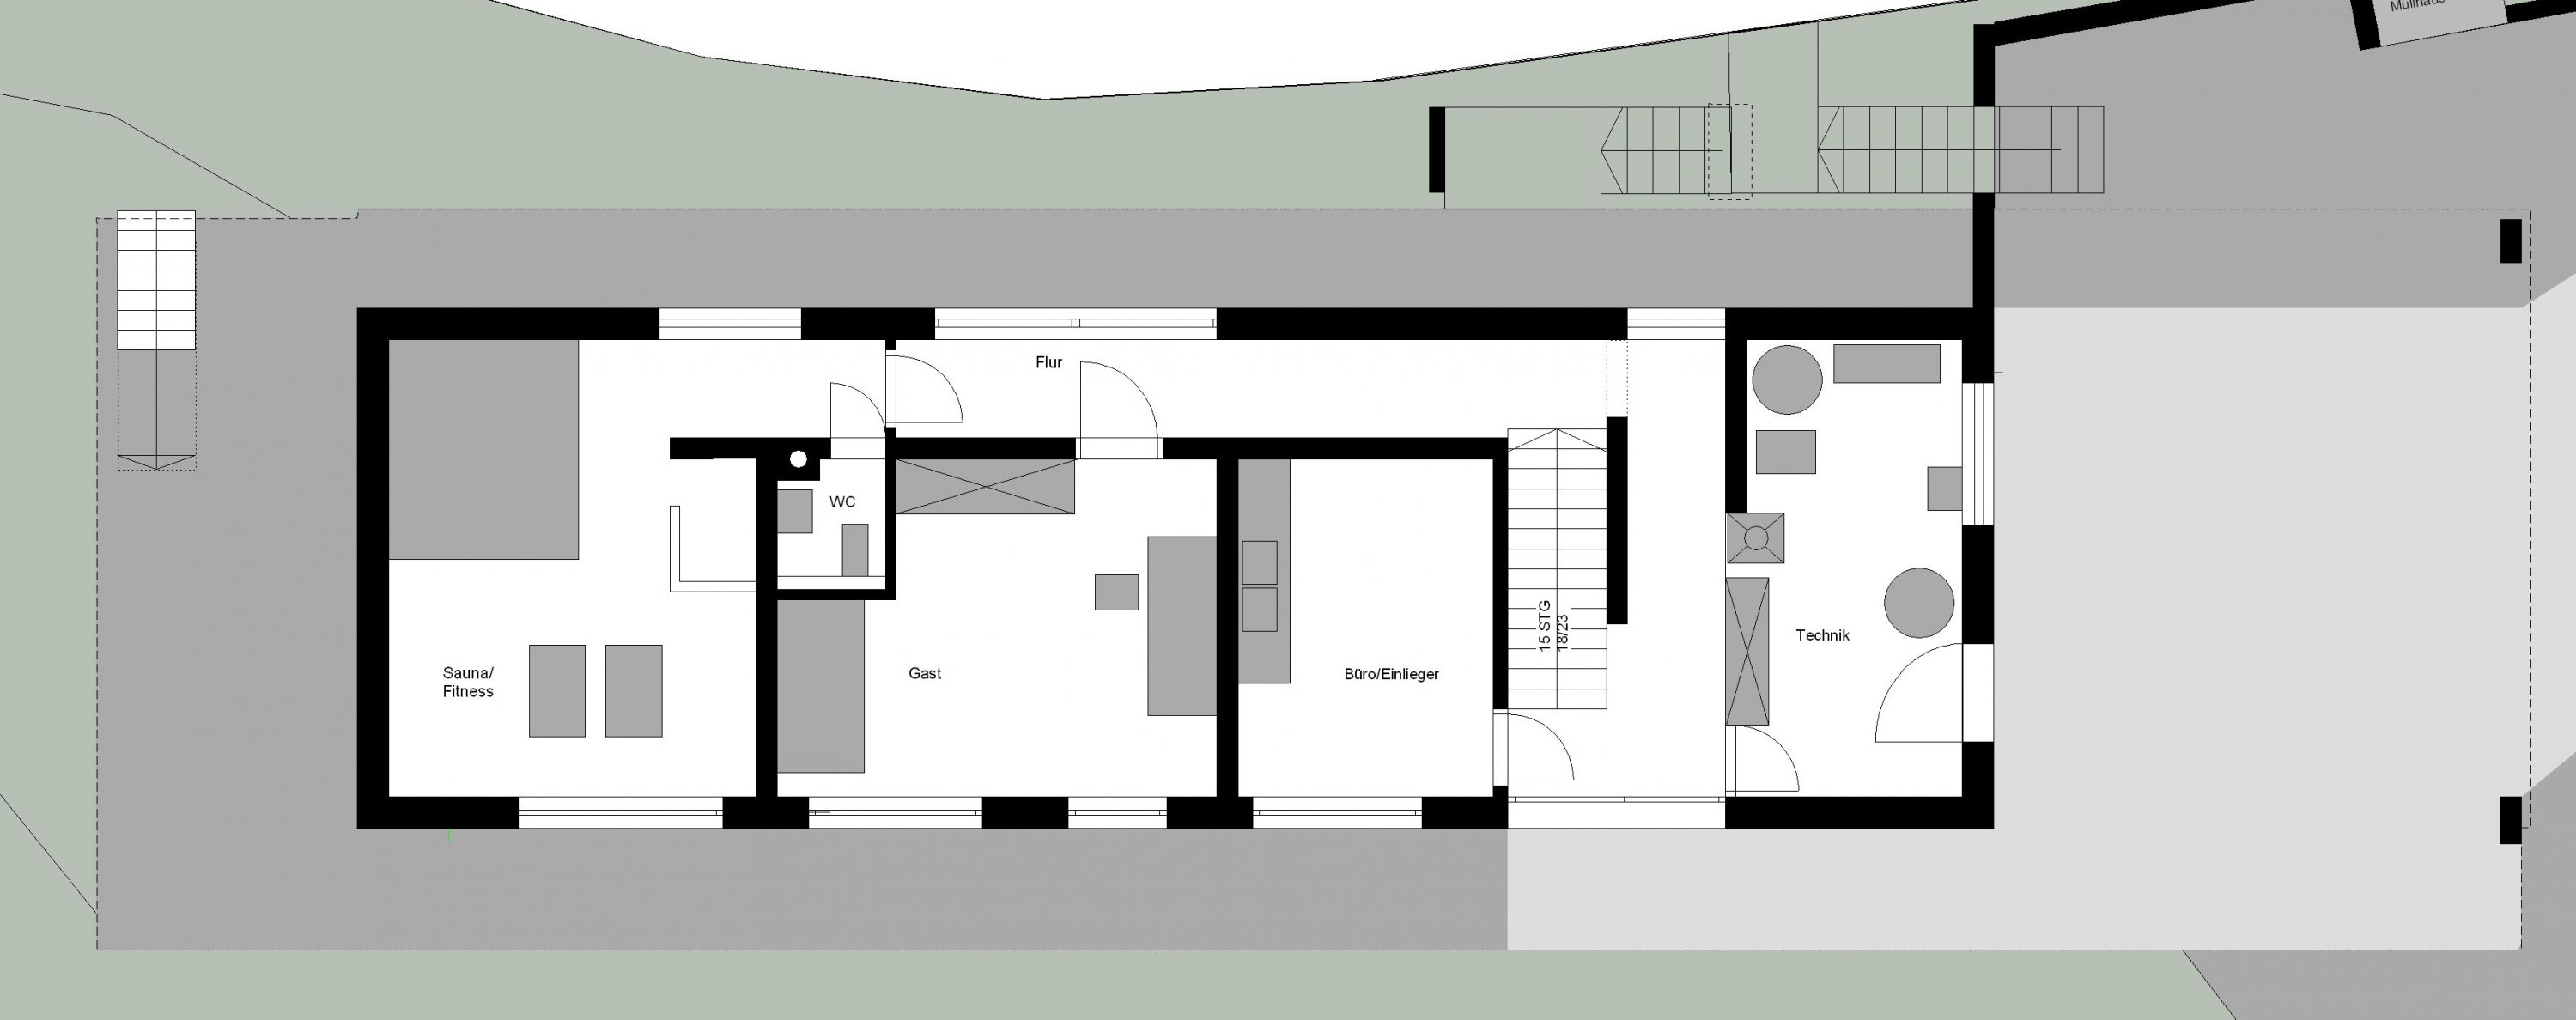 blockhaus-mit-krueppelwalmdach-am-wald-planung-verbessern-269409-1.jpg